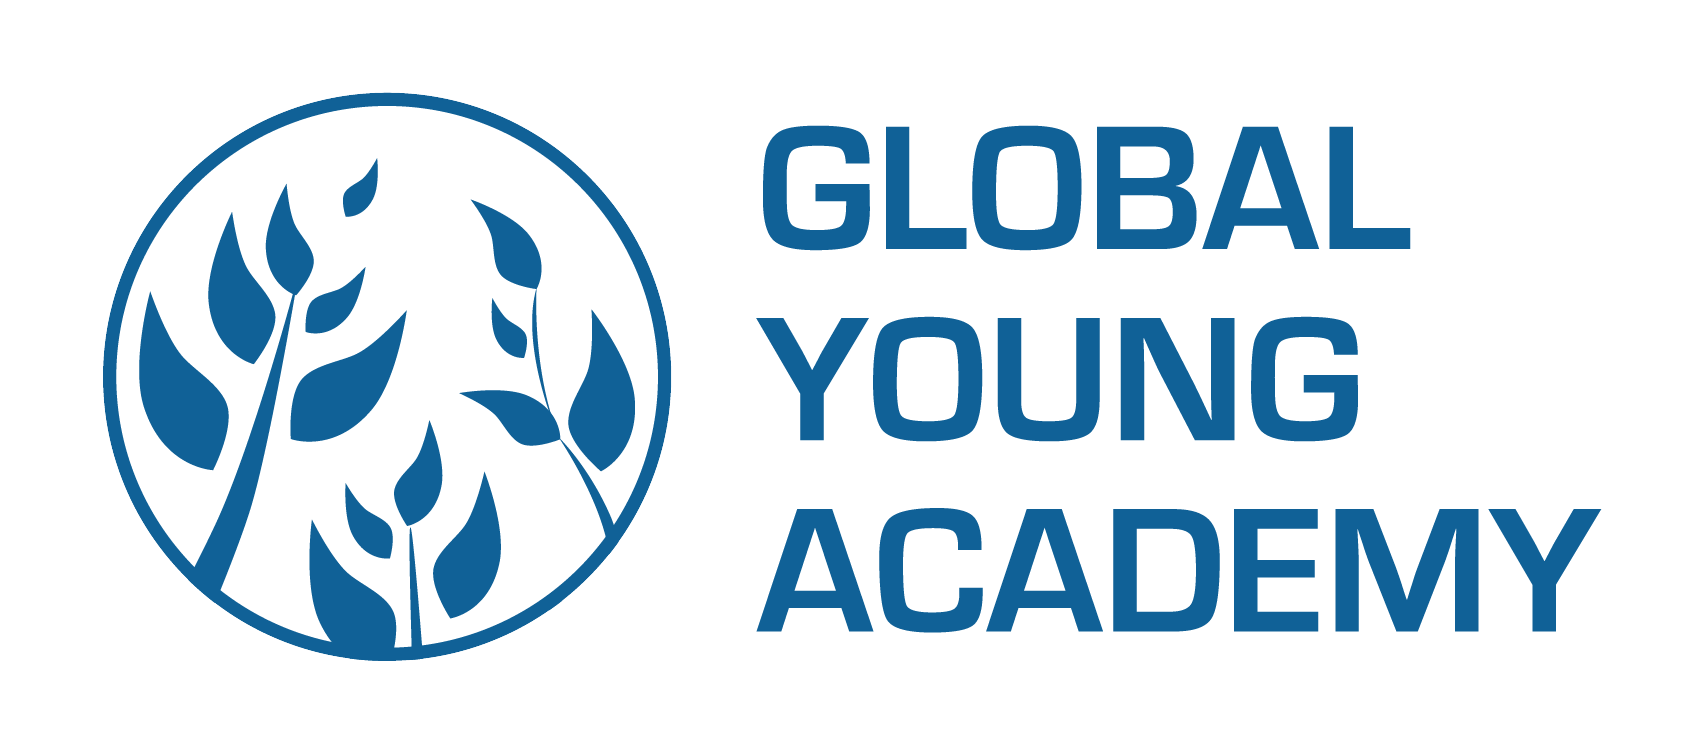 Concours de Global Young Academy Nouvel appel à candidatures pour les jeunes leaders 2018